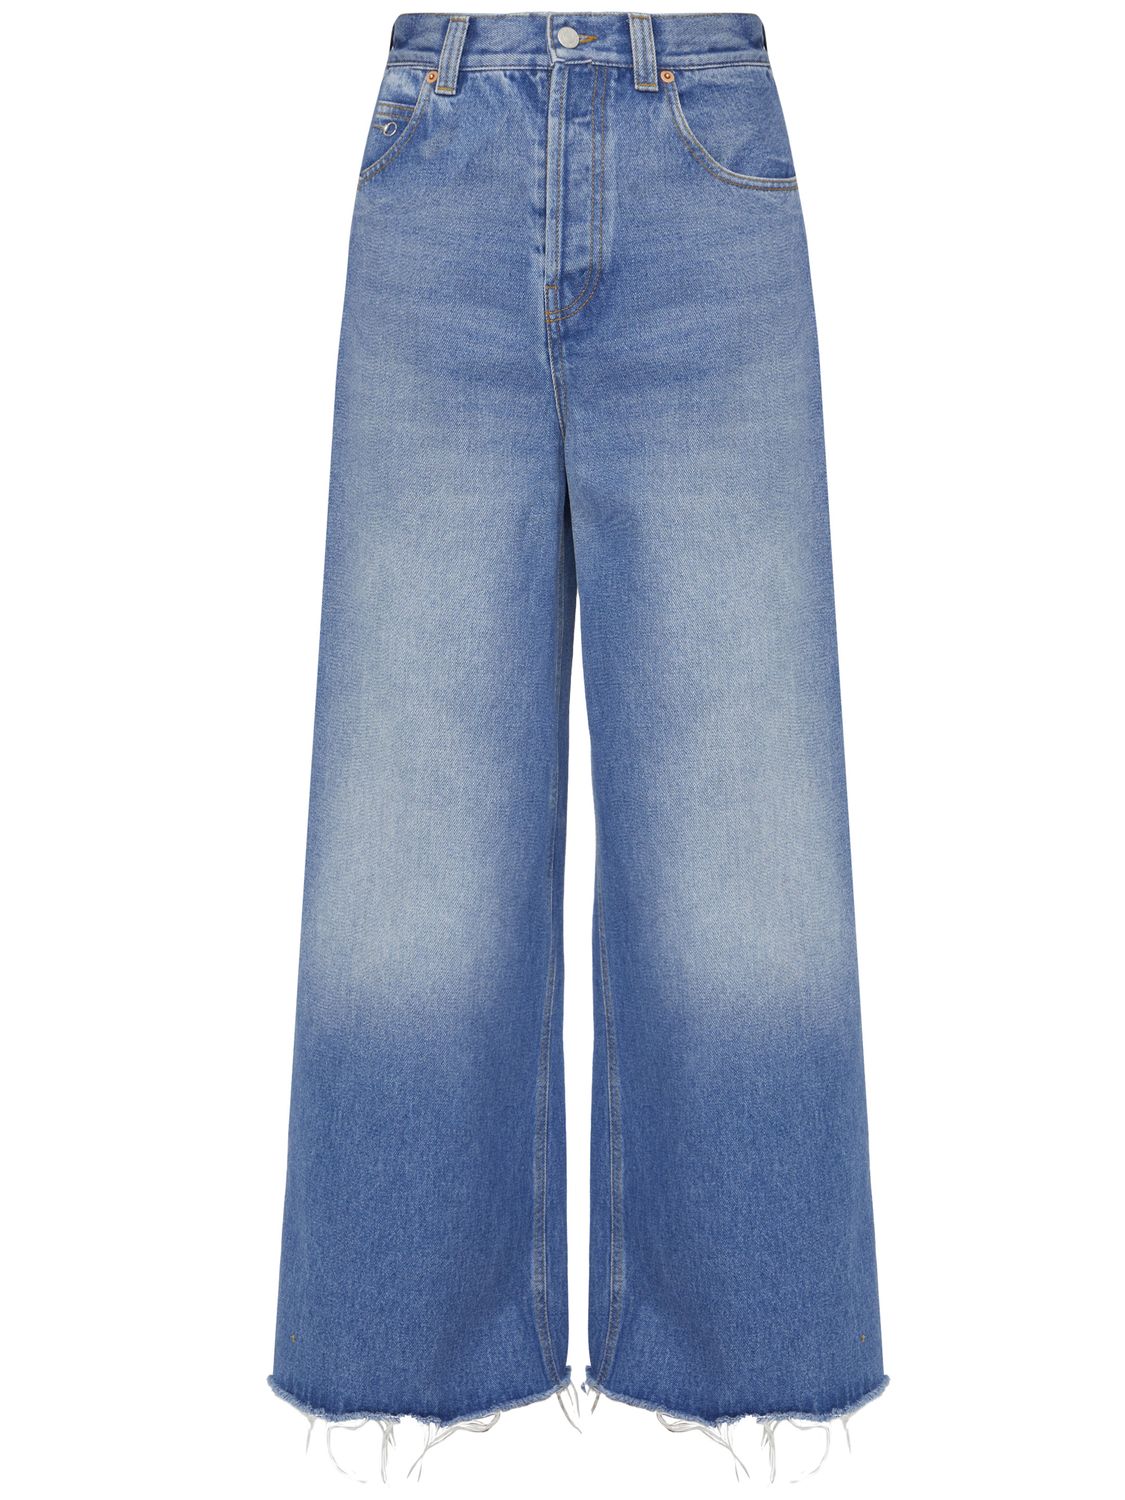 جينز دنيم واسع الساق بلون أزرق فاتح للنساء - مجموعة ربيع / صيف ٢٠٢٤